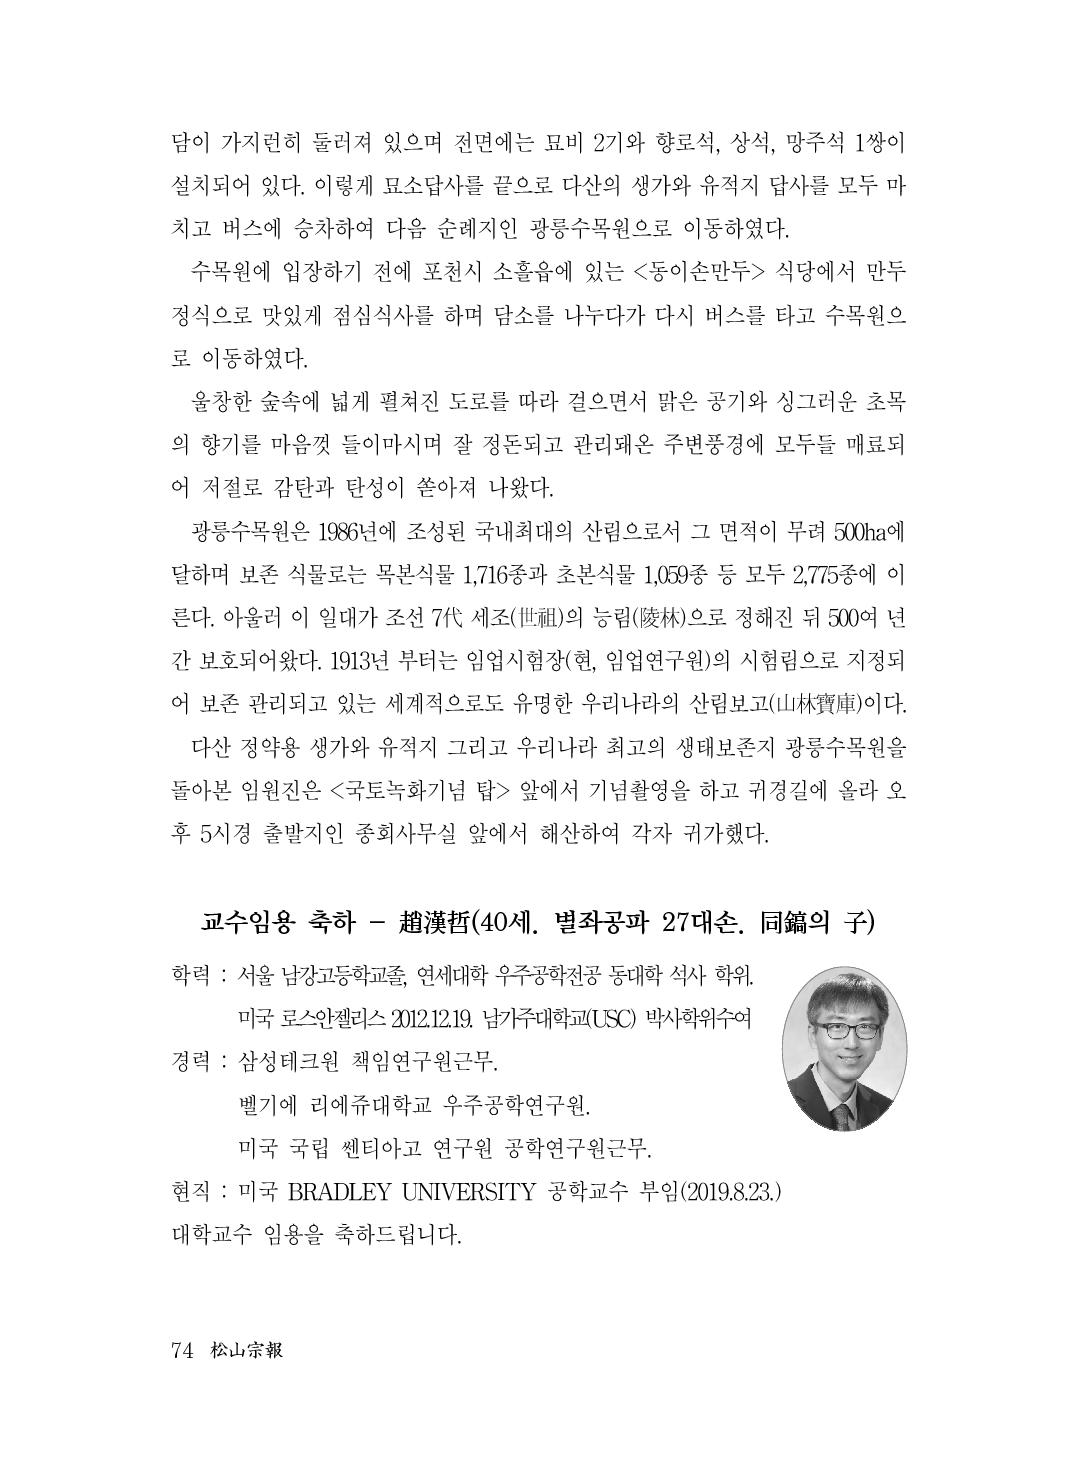 (전체) 송산종보(27호)(최종)_75.jpg